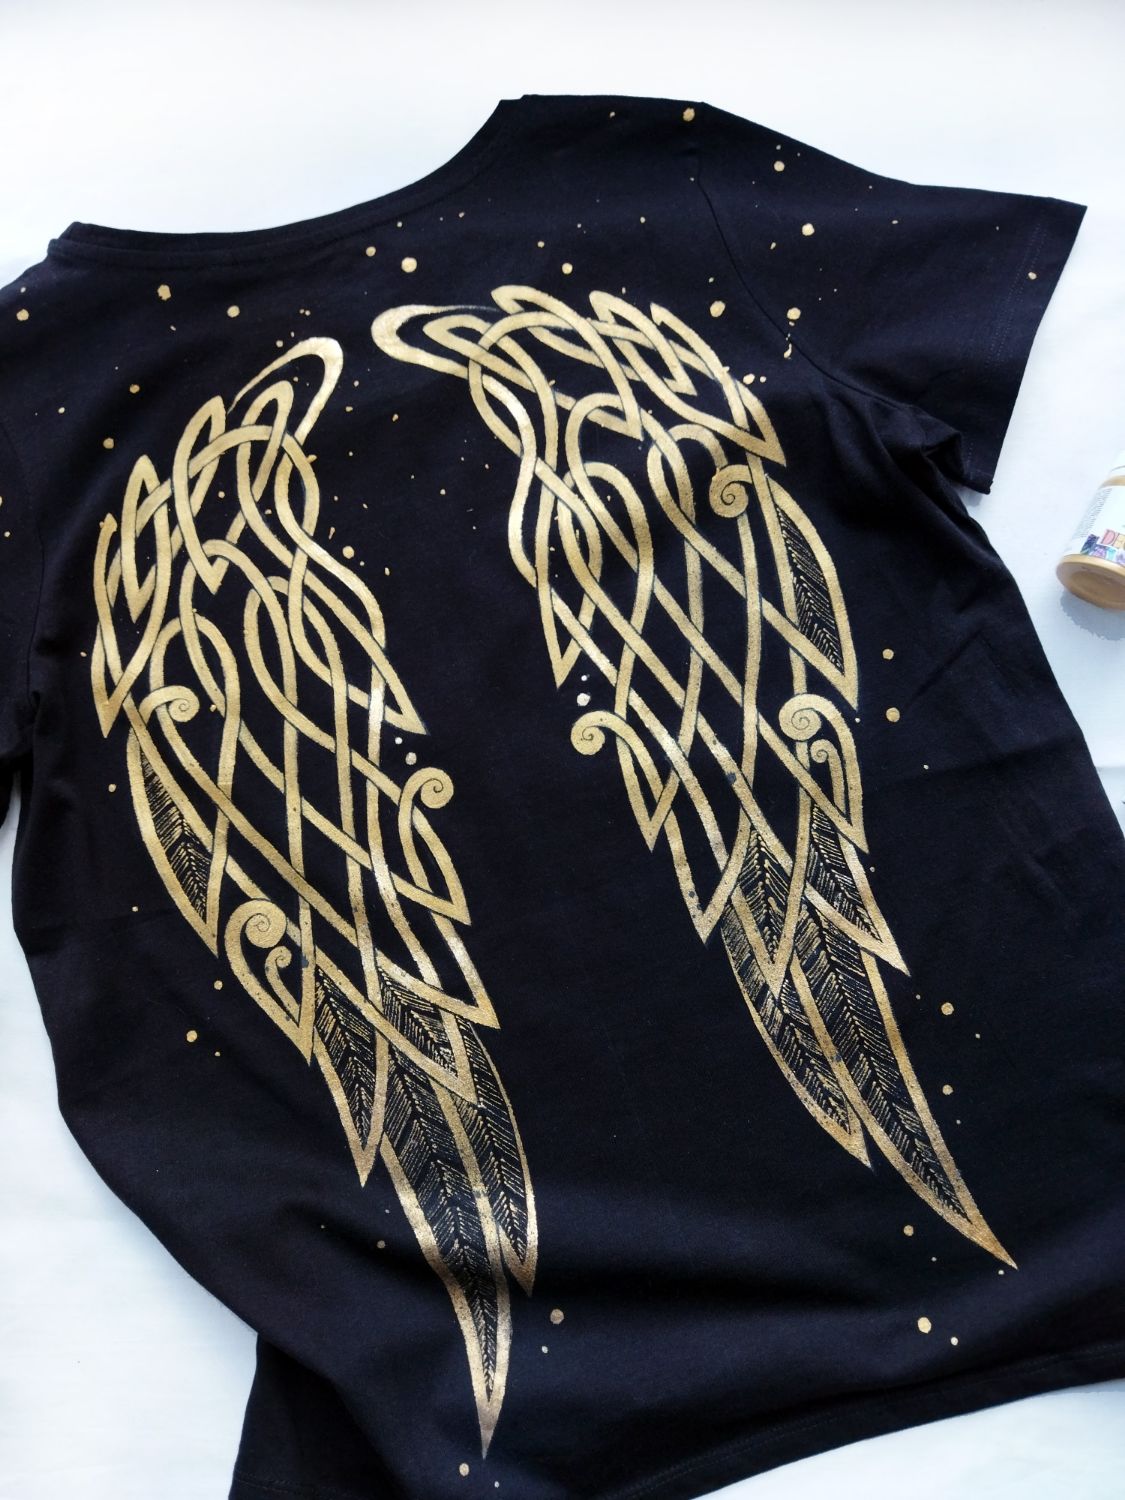 Оверсайз футболки с крыльями на спине и надписью с маленькими крыльями